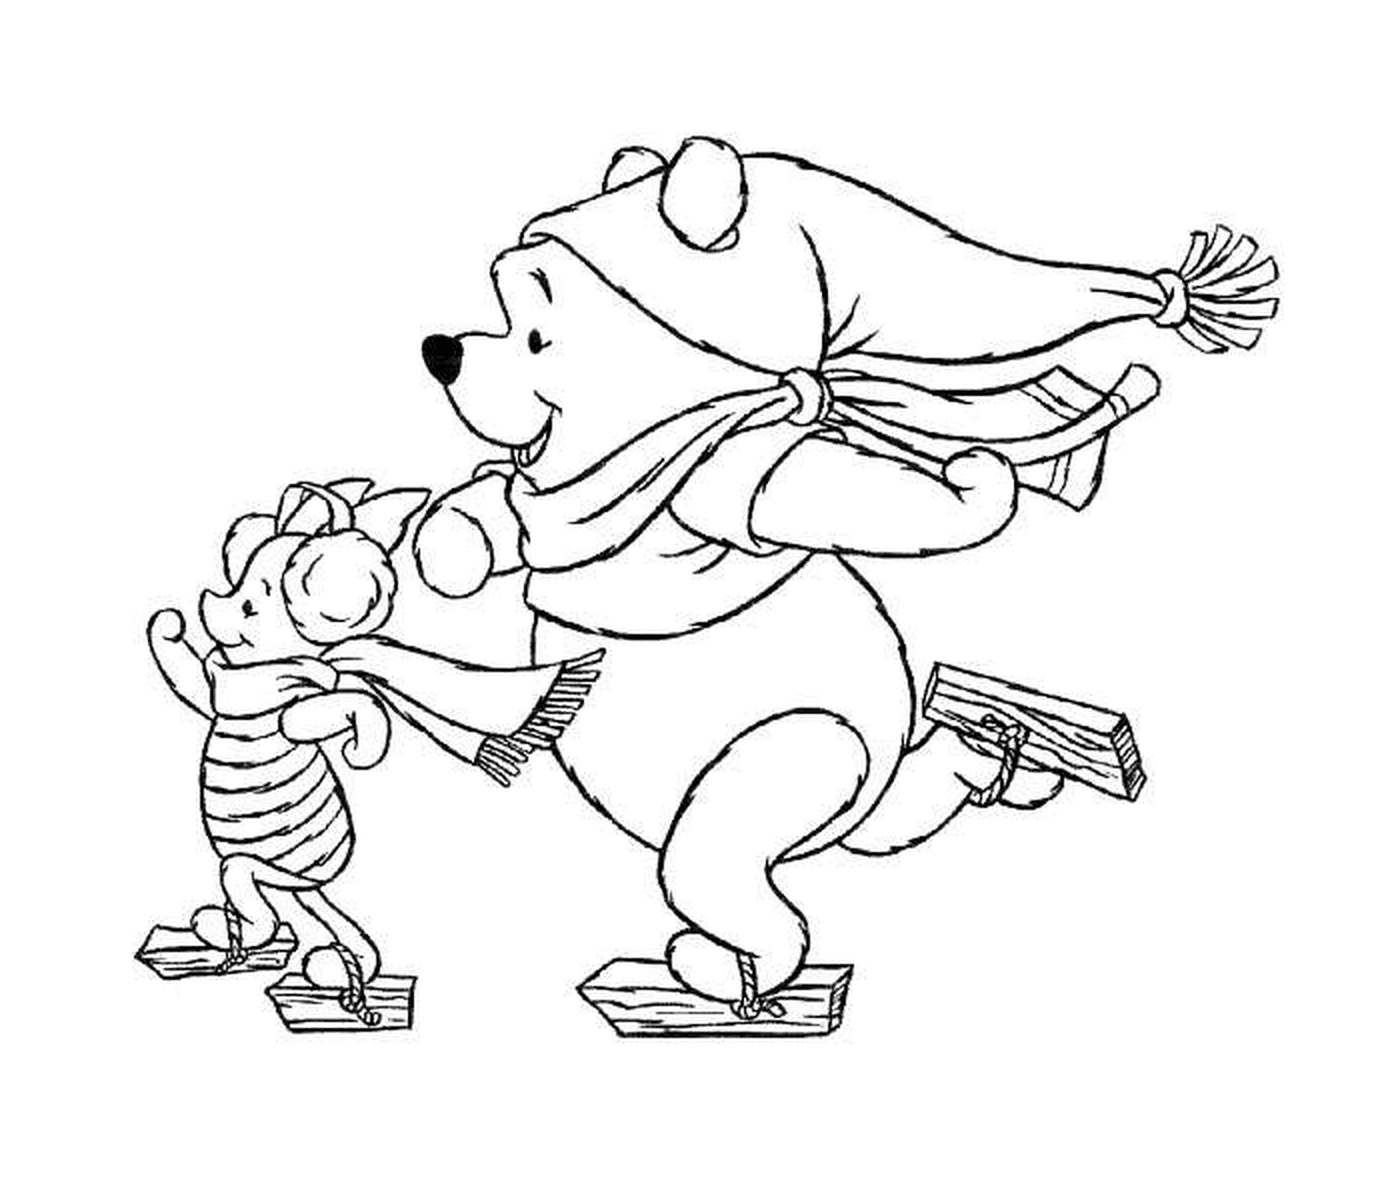  Winnie o urso e Porcinet 